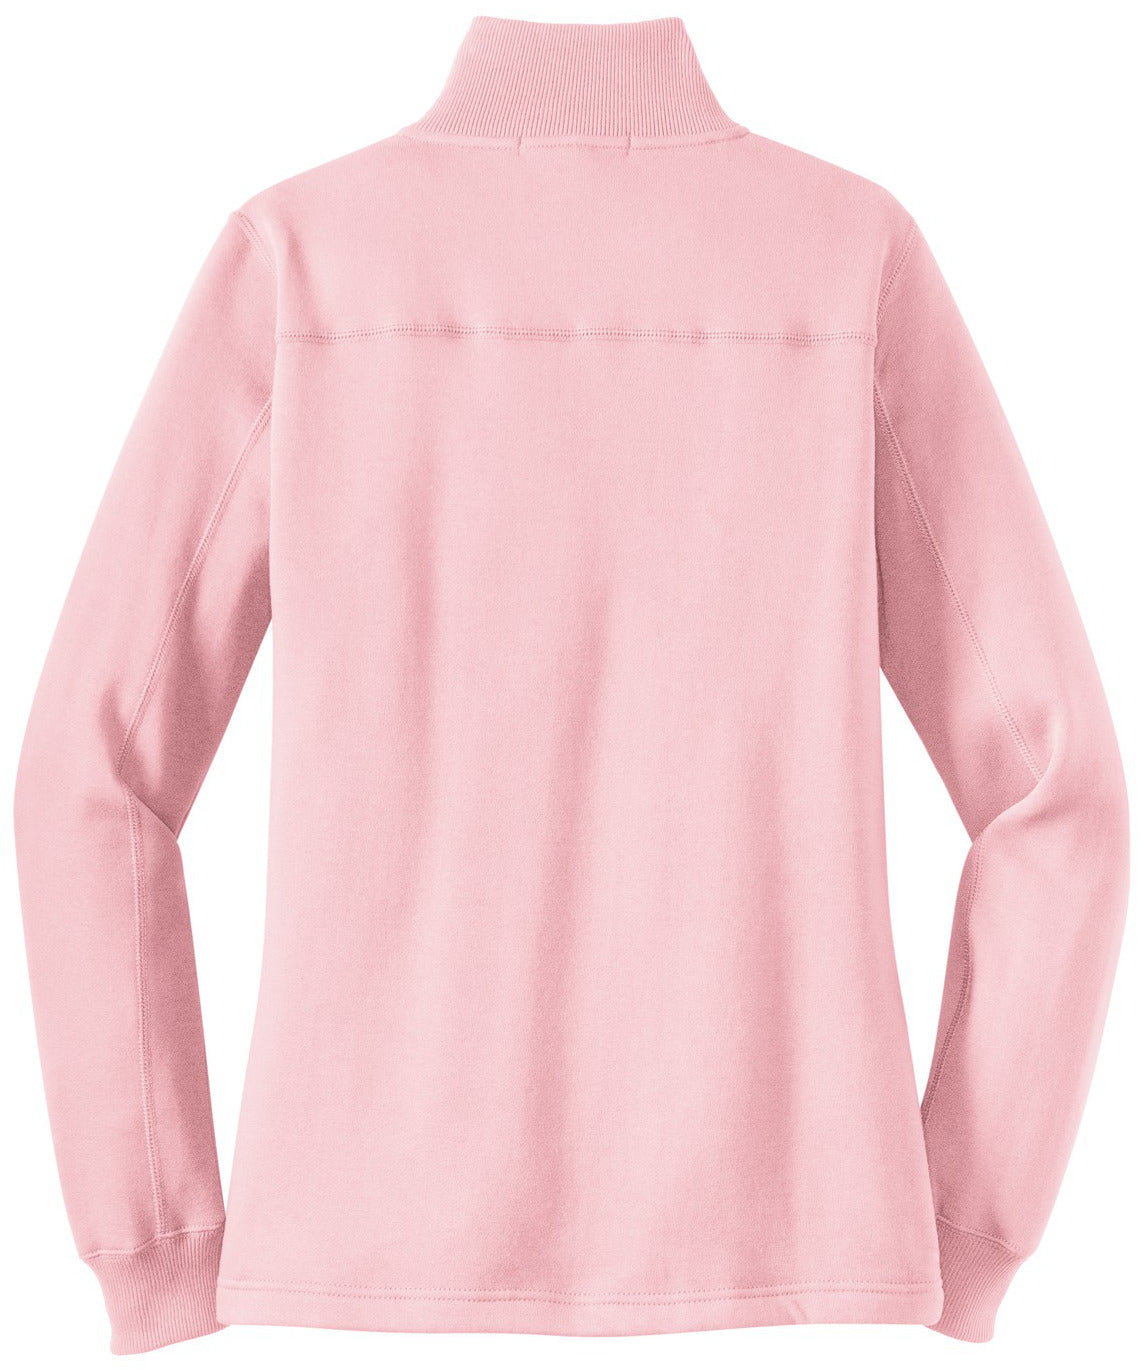 Mafoose Women's 1/4 Zip Sweatshirt Pink-Back